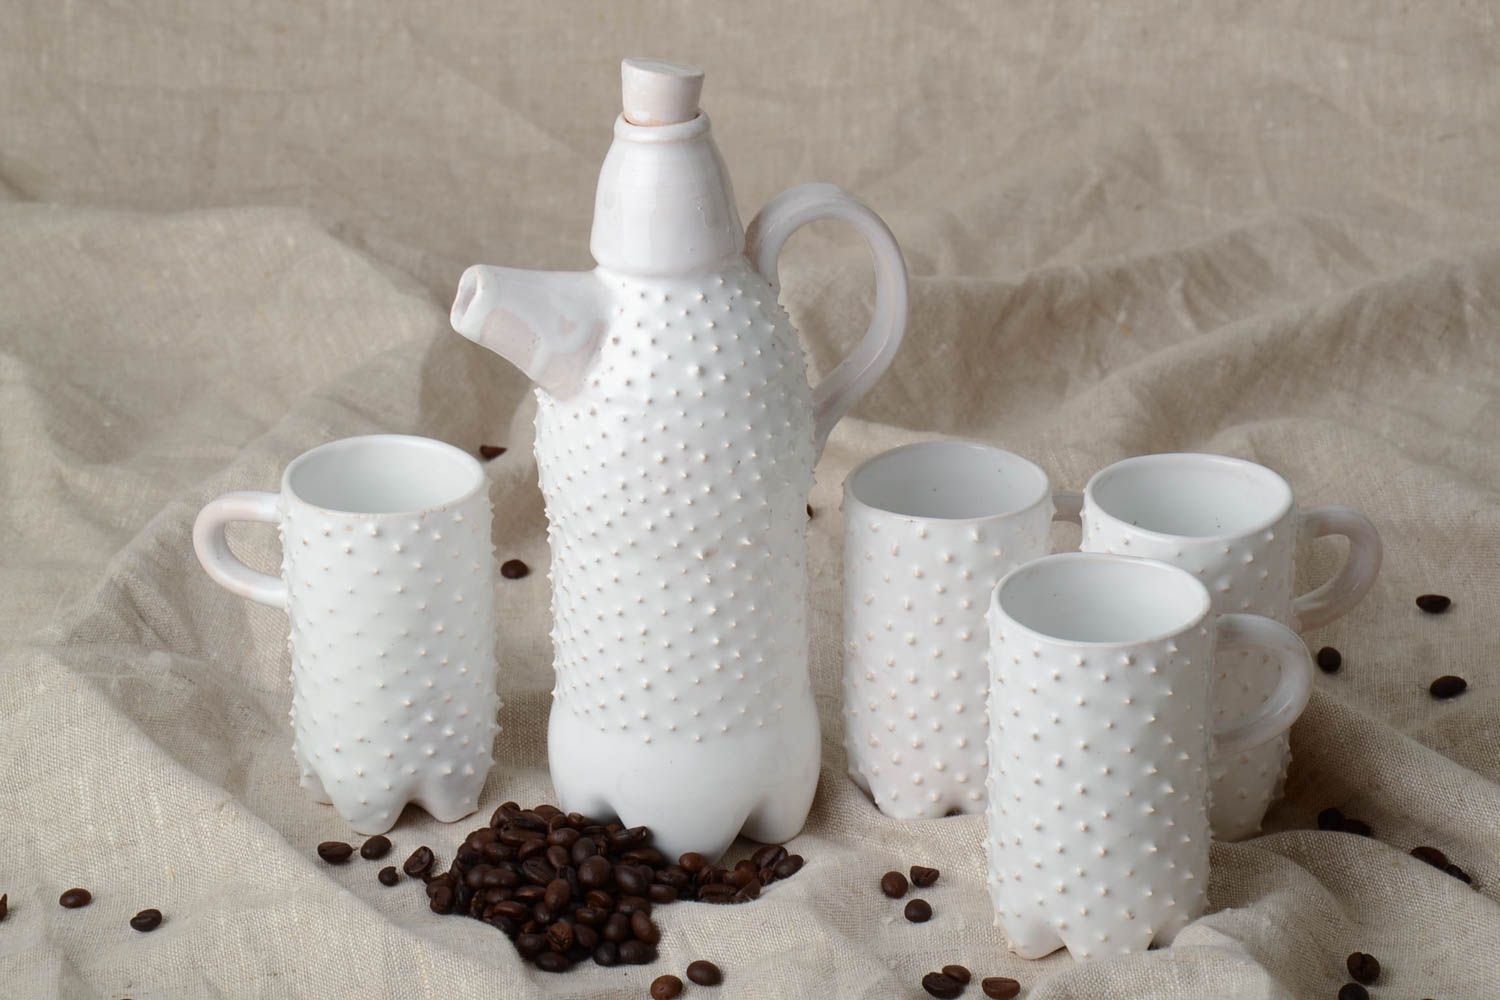 Четыре чашки для чая и кофе с кофейником комплект белого цвета глина хэнд мейд фото 1